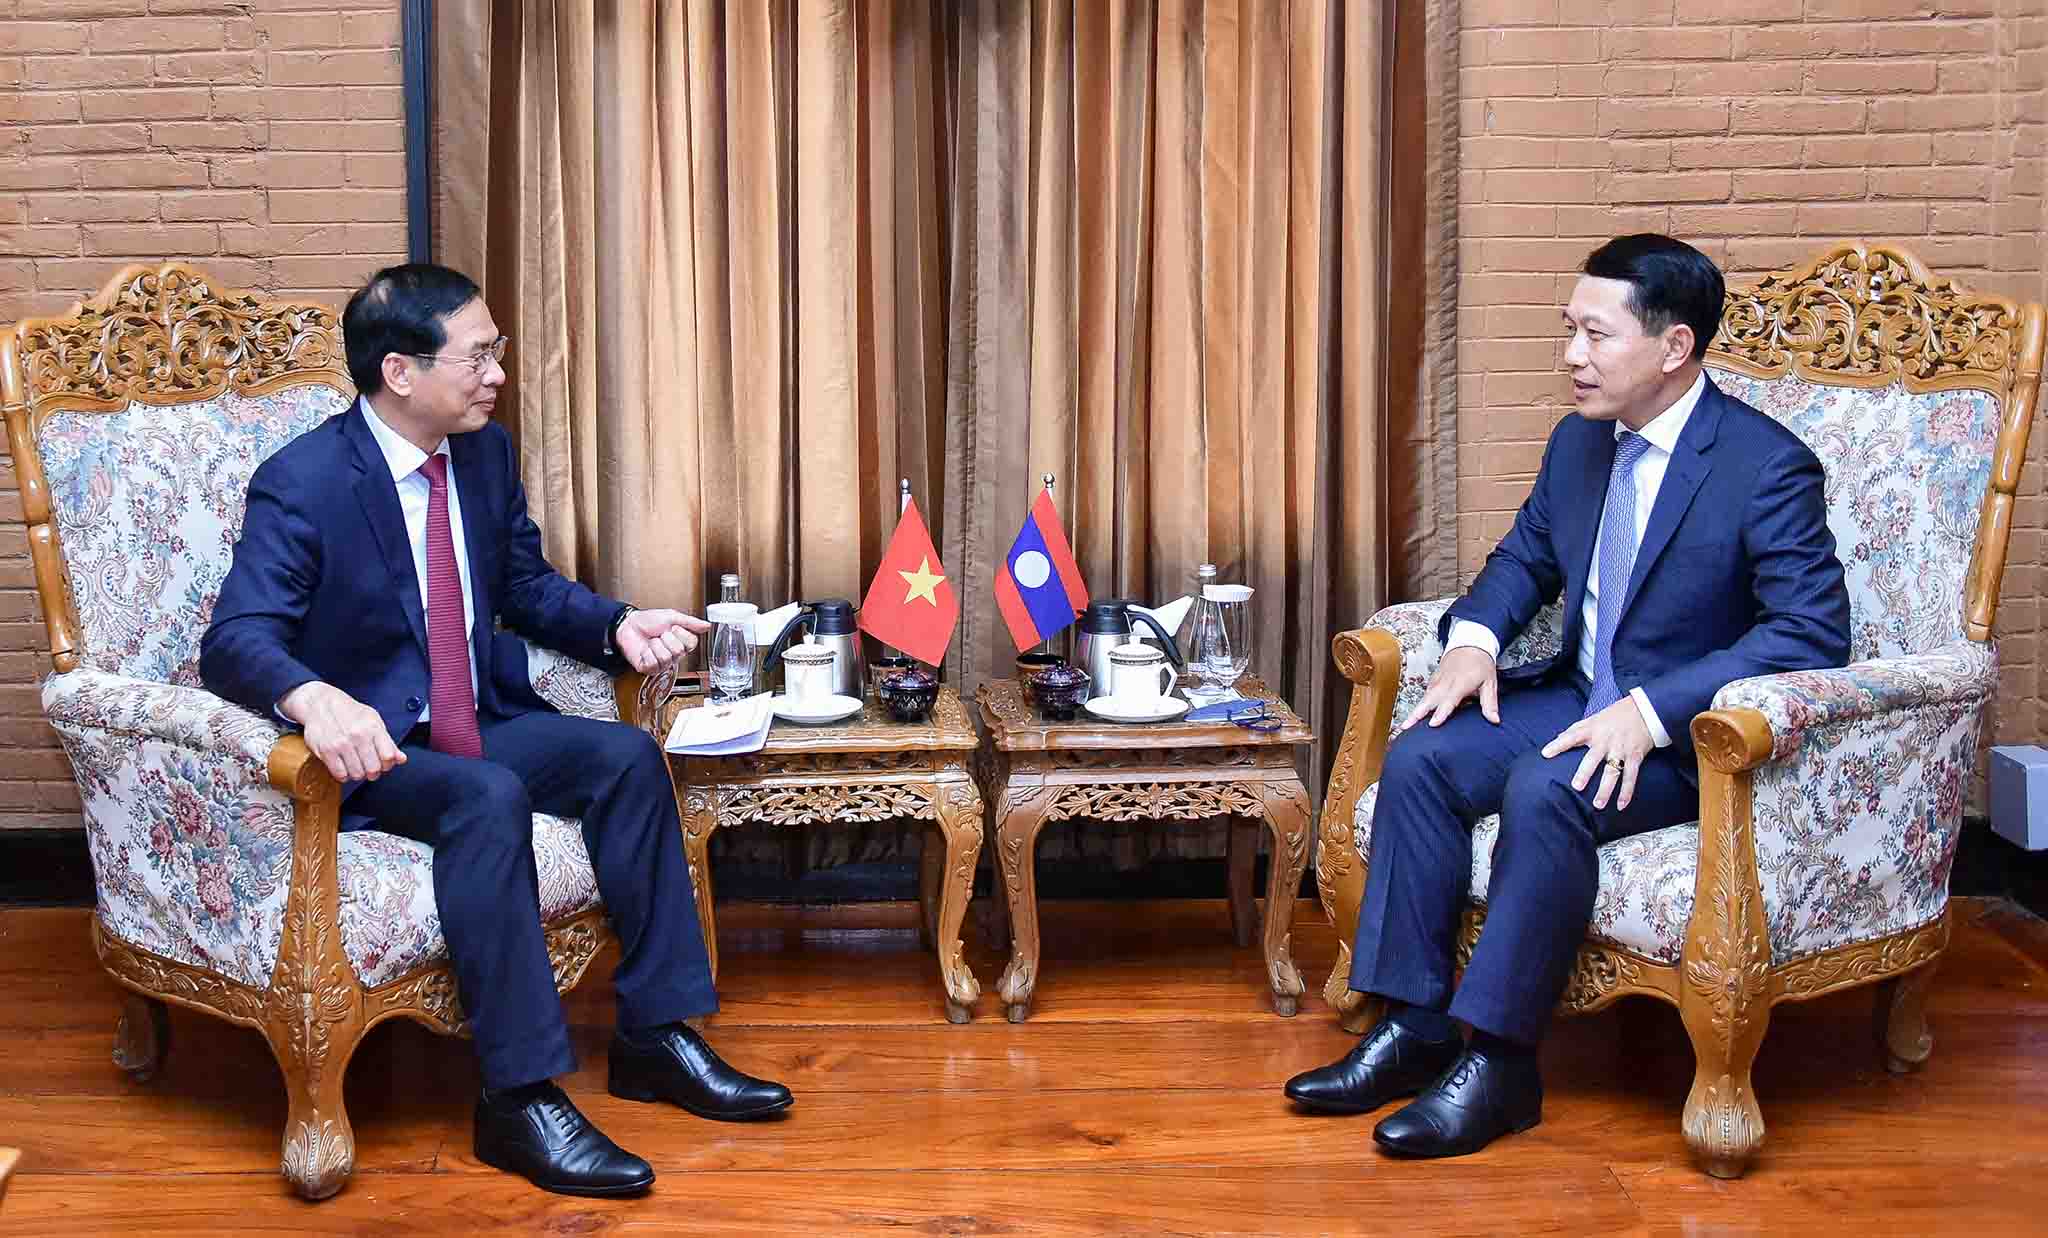  Bộ trưởng Ngoại giao Bùi Thanh Sơn trong cuộc gặp với Phó Thủ tướng, Bộ trưởng Ngoại giao Lào Saleumxay Kommasith